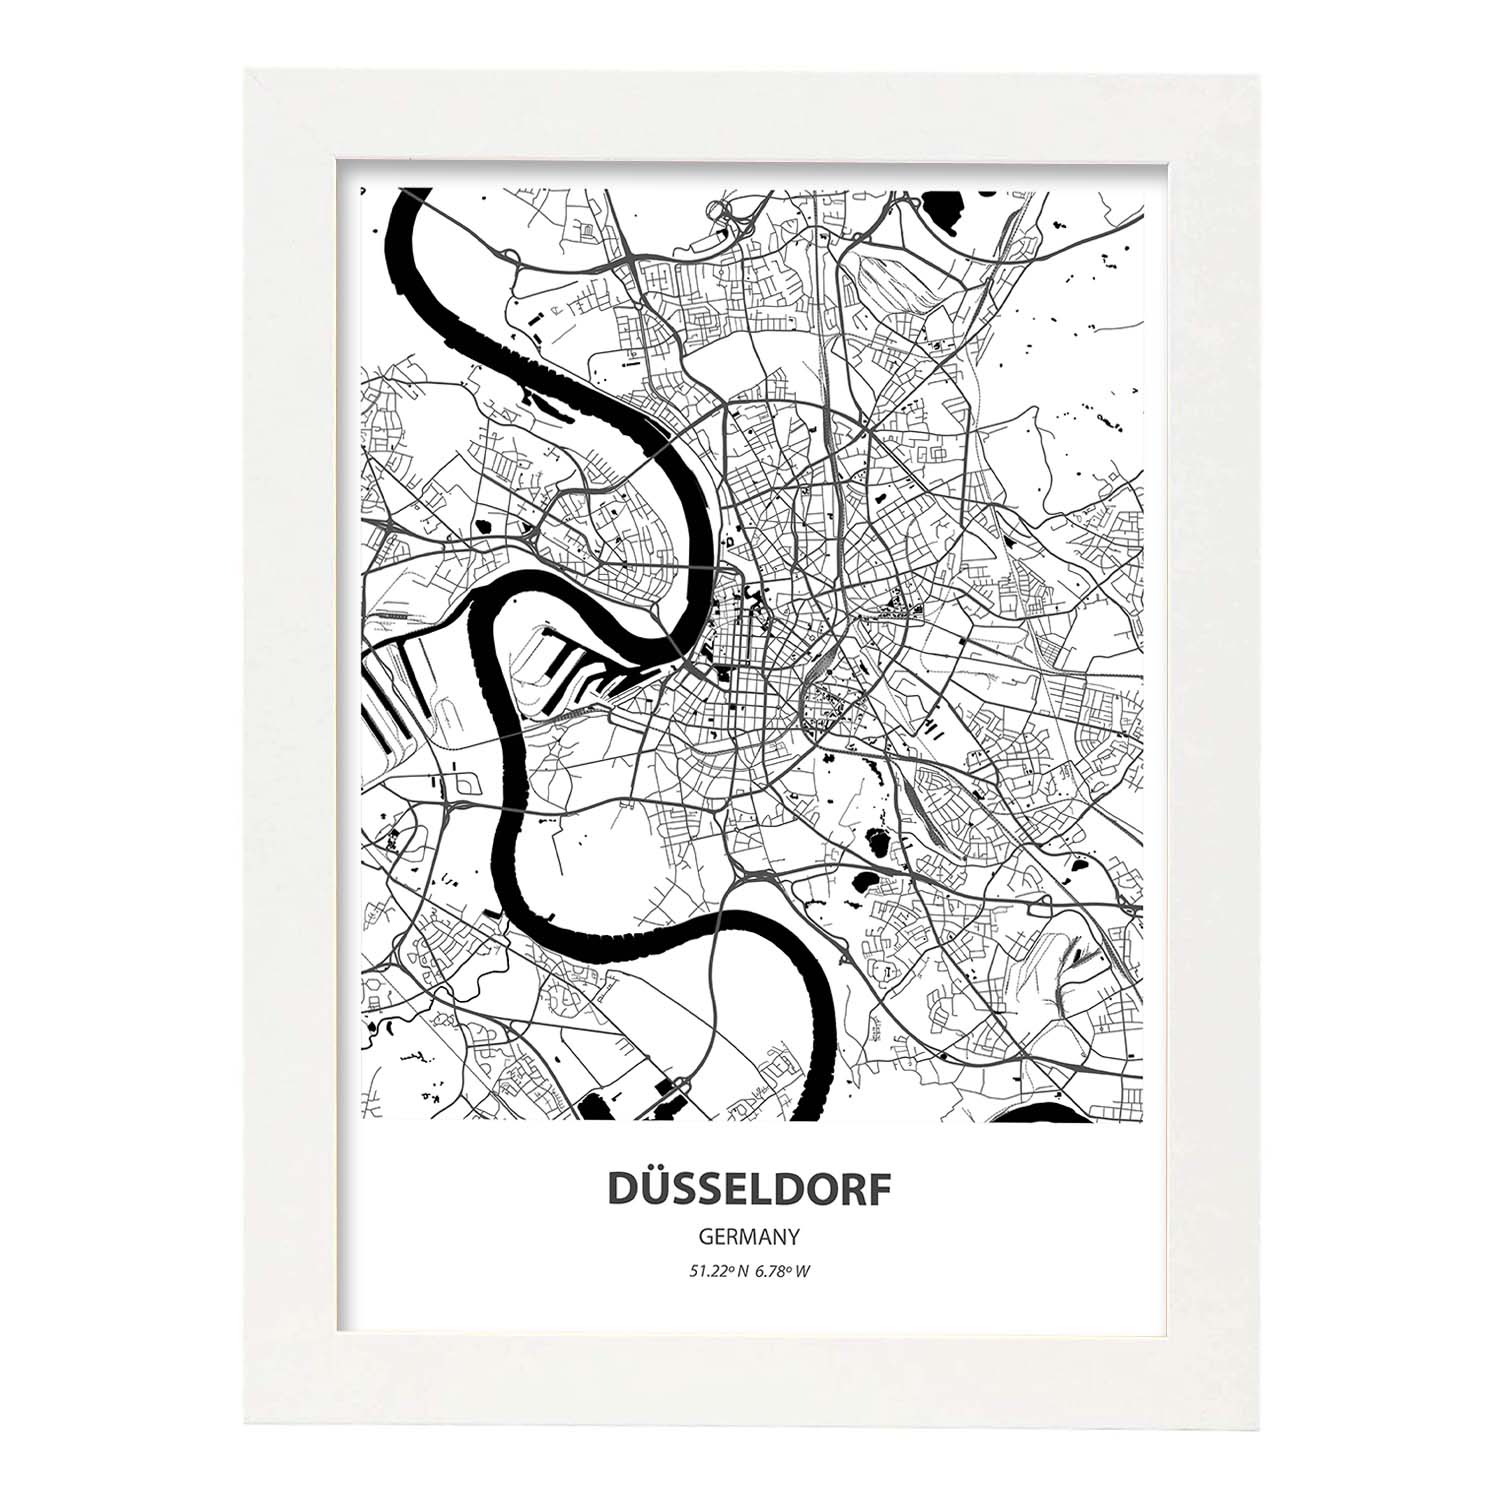 Poster con mapa de Dusseldorf - Alemania. Láminas de ciudades de Alemania con mares y ríos en color negro.-Artwork-Nacnic-A3-Marco Blanco-Nacnic Estudio SL